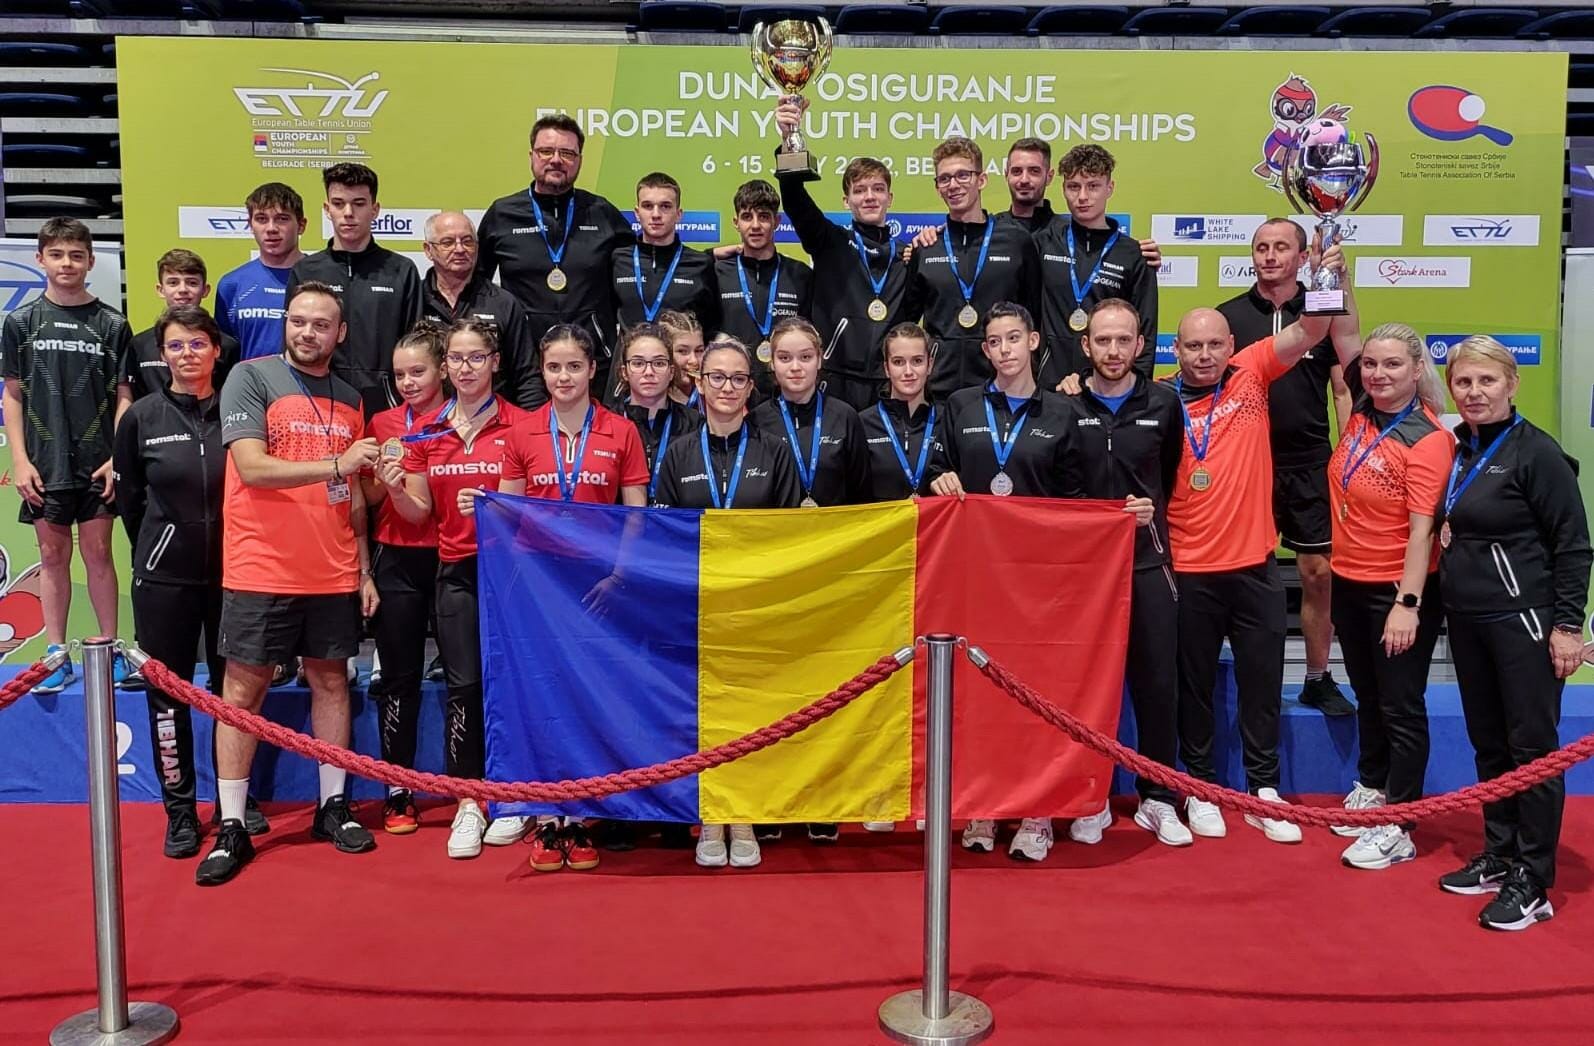 Au cucerit Europa! Echipele României de fete și băieții au câștigat titlul continental la tenis de masă!